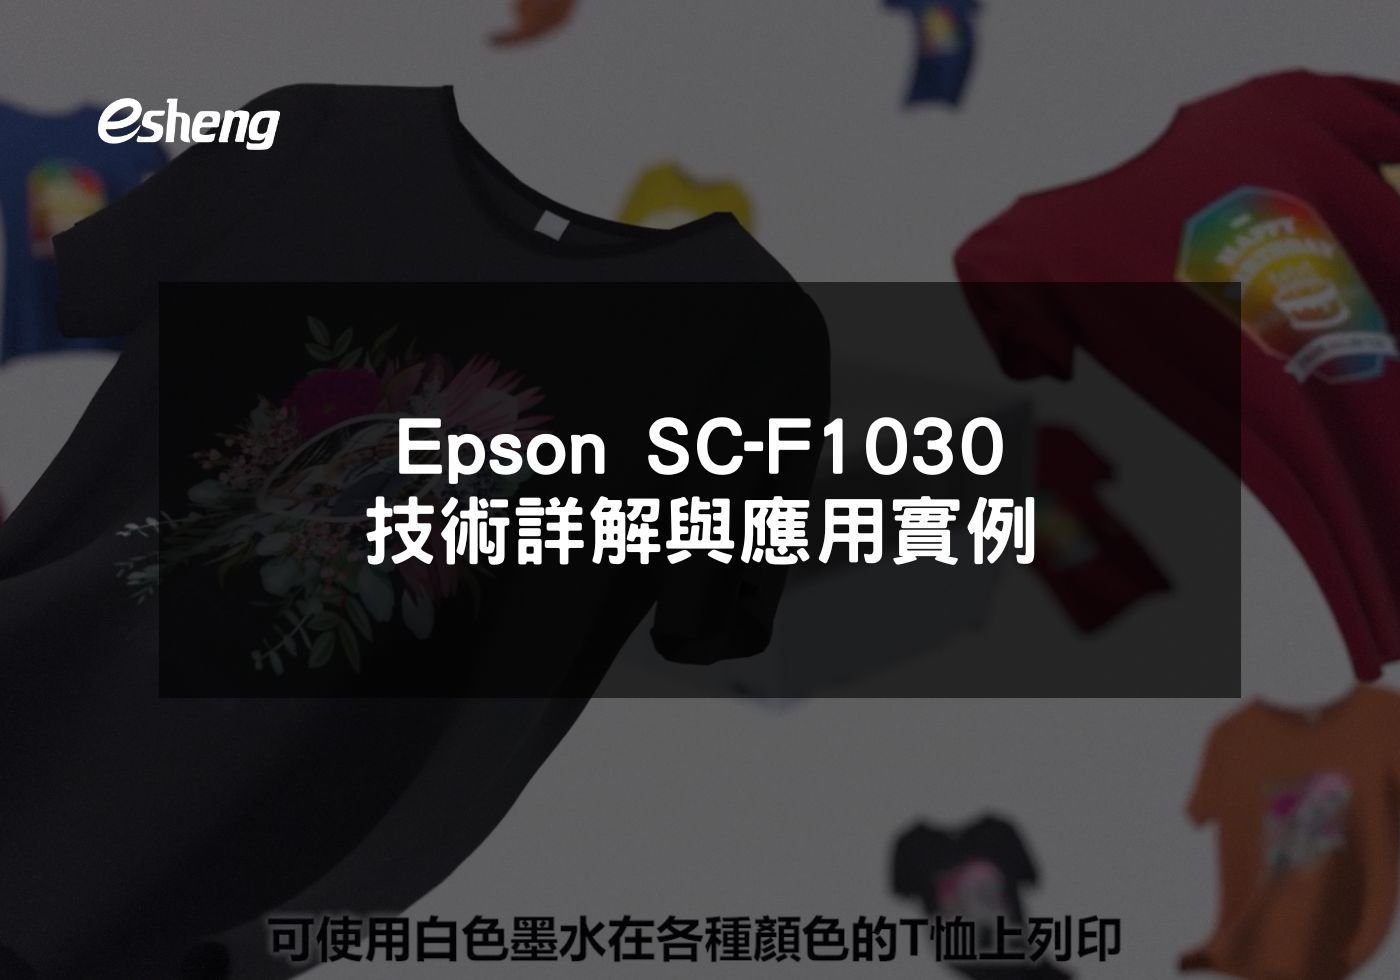 Epson SC-F1030 技術詳解與應用實例